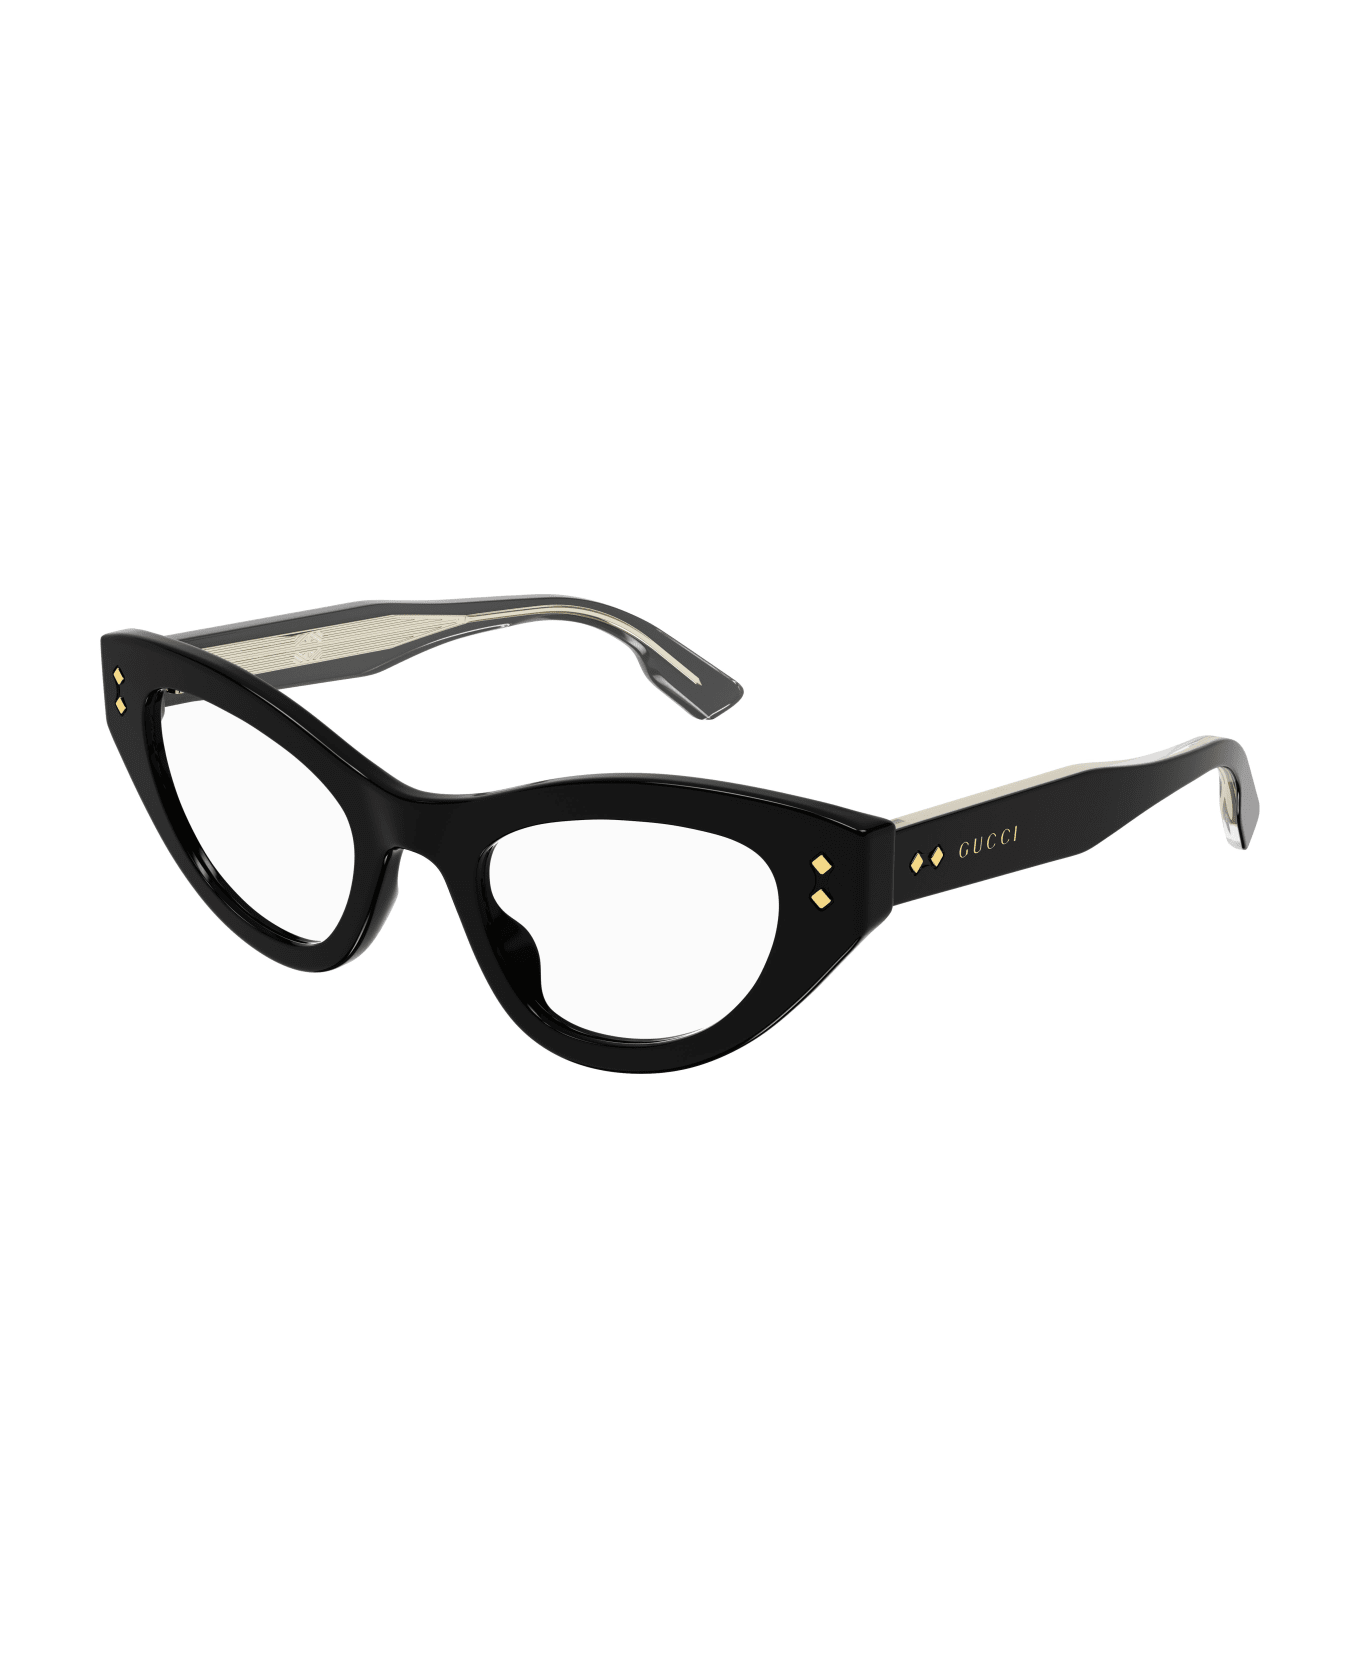 Gucci Eyewear 1bbb4az0a Glasses - 001 black black transpare